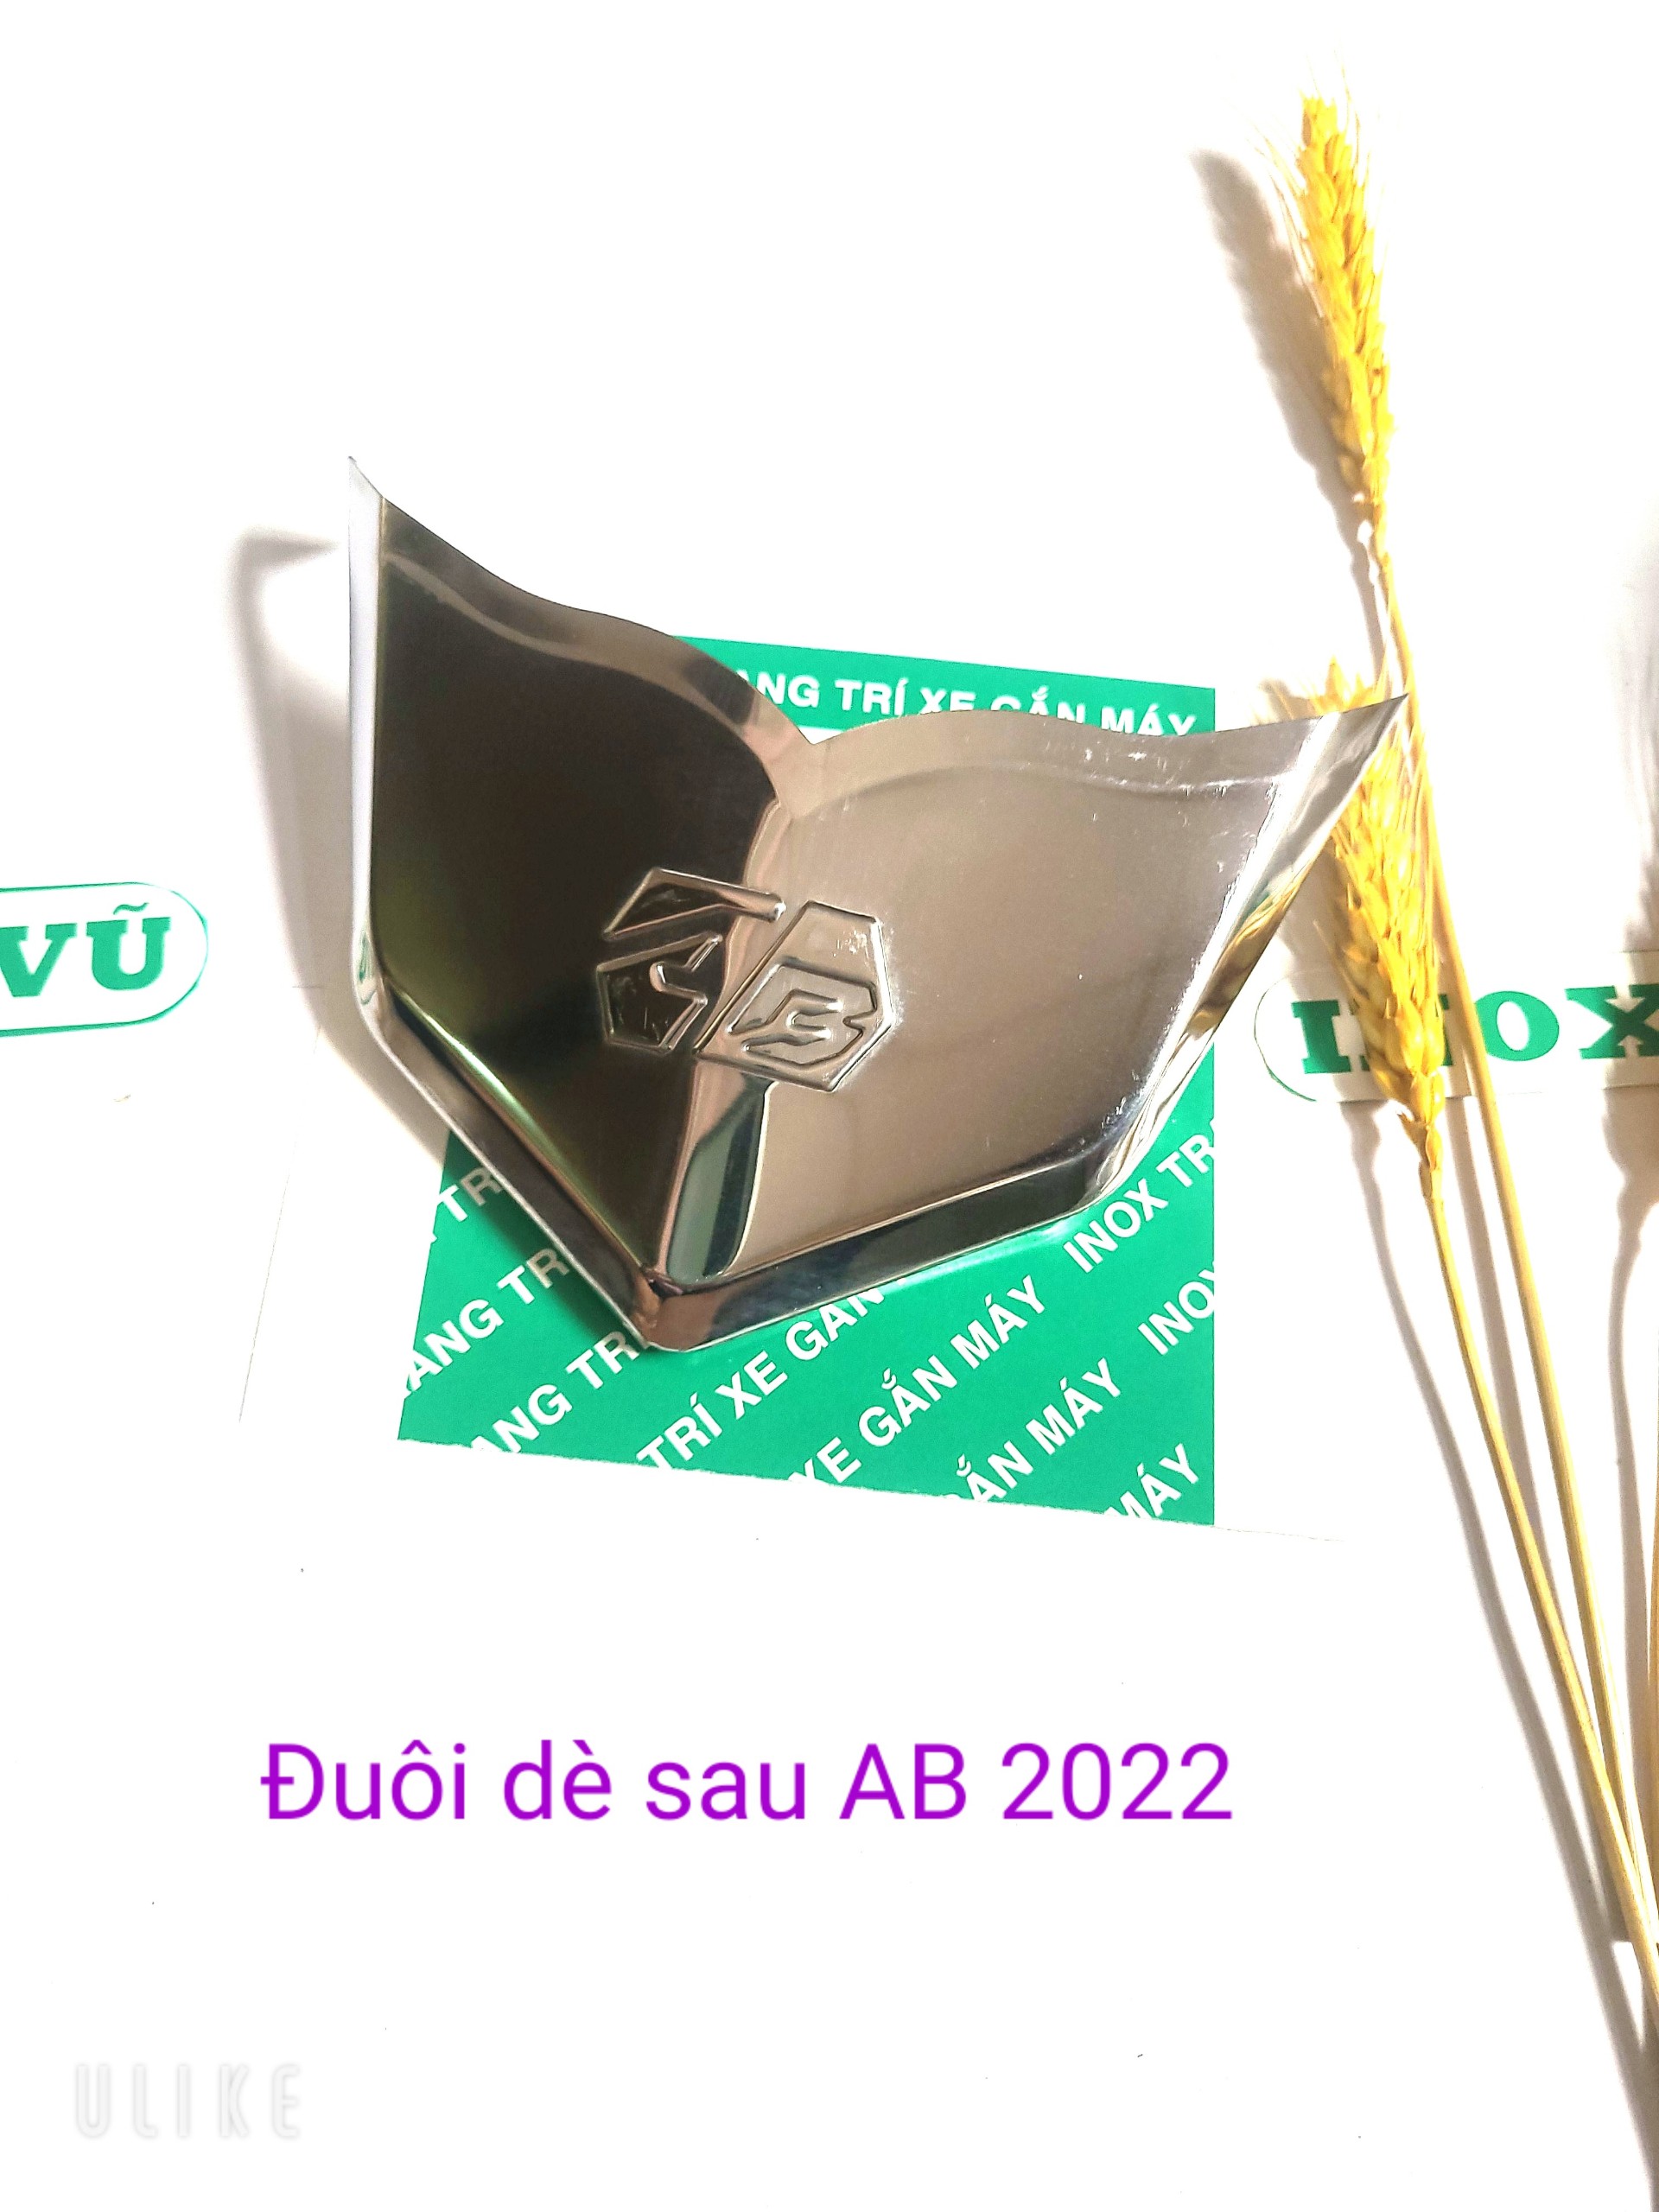 Combo Bộ ốp dè INOX xe AIRBLADE 2022-2023  + 1tem logo Titan HONDDA giá 1 cặp tại xưởng INOX Vũ